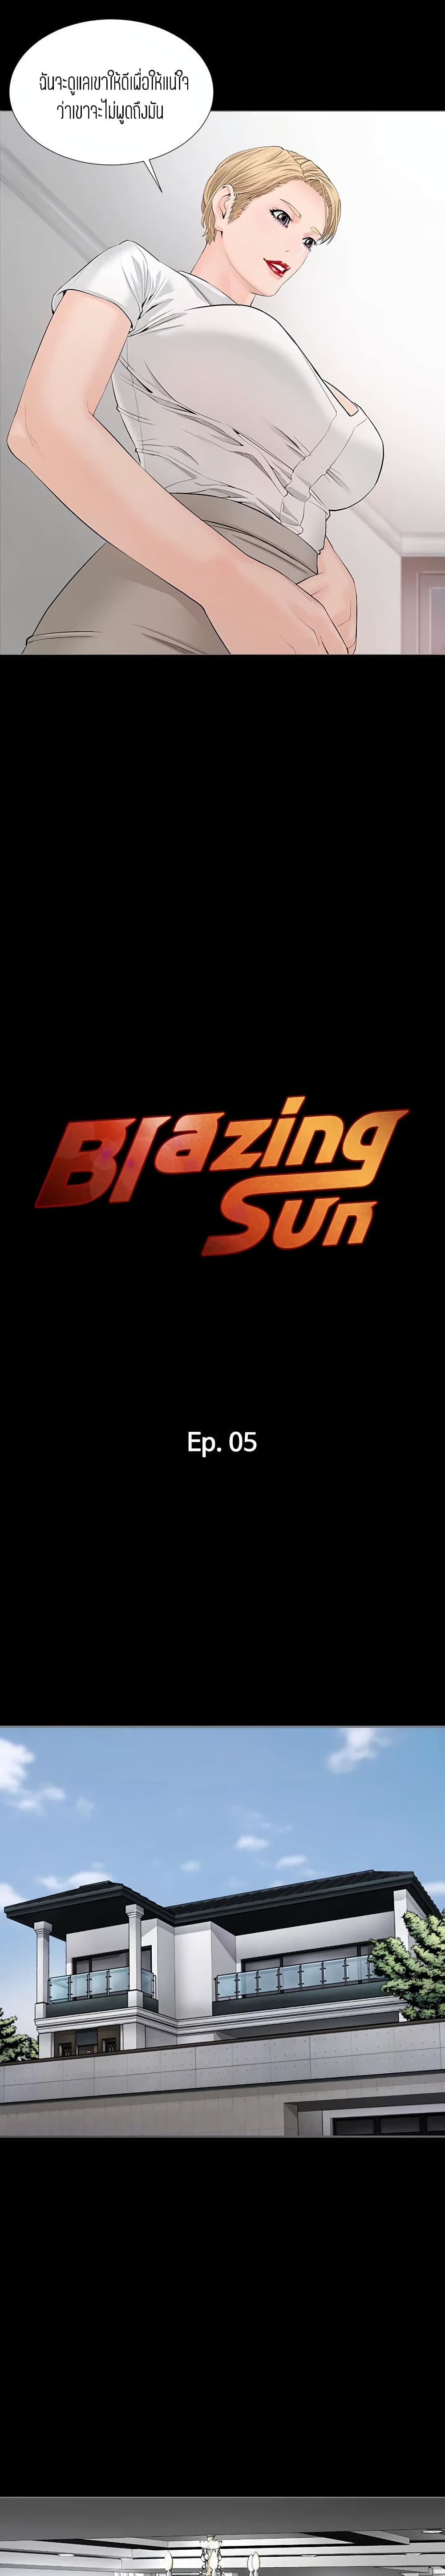 Blazing Sun 5 (2)